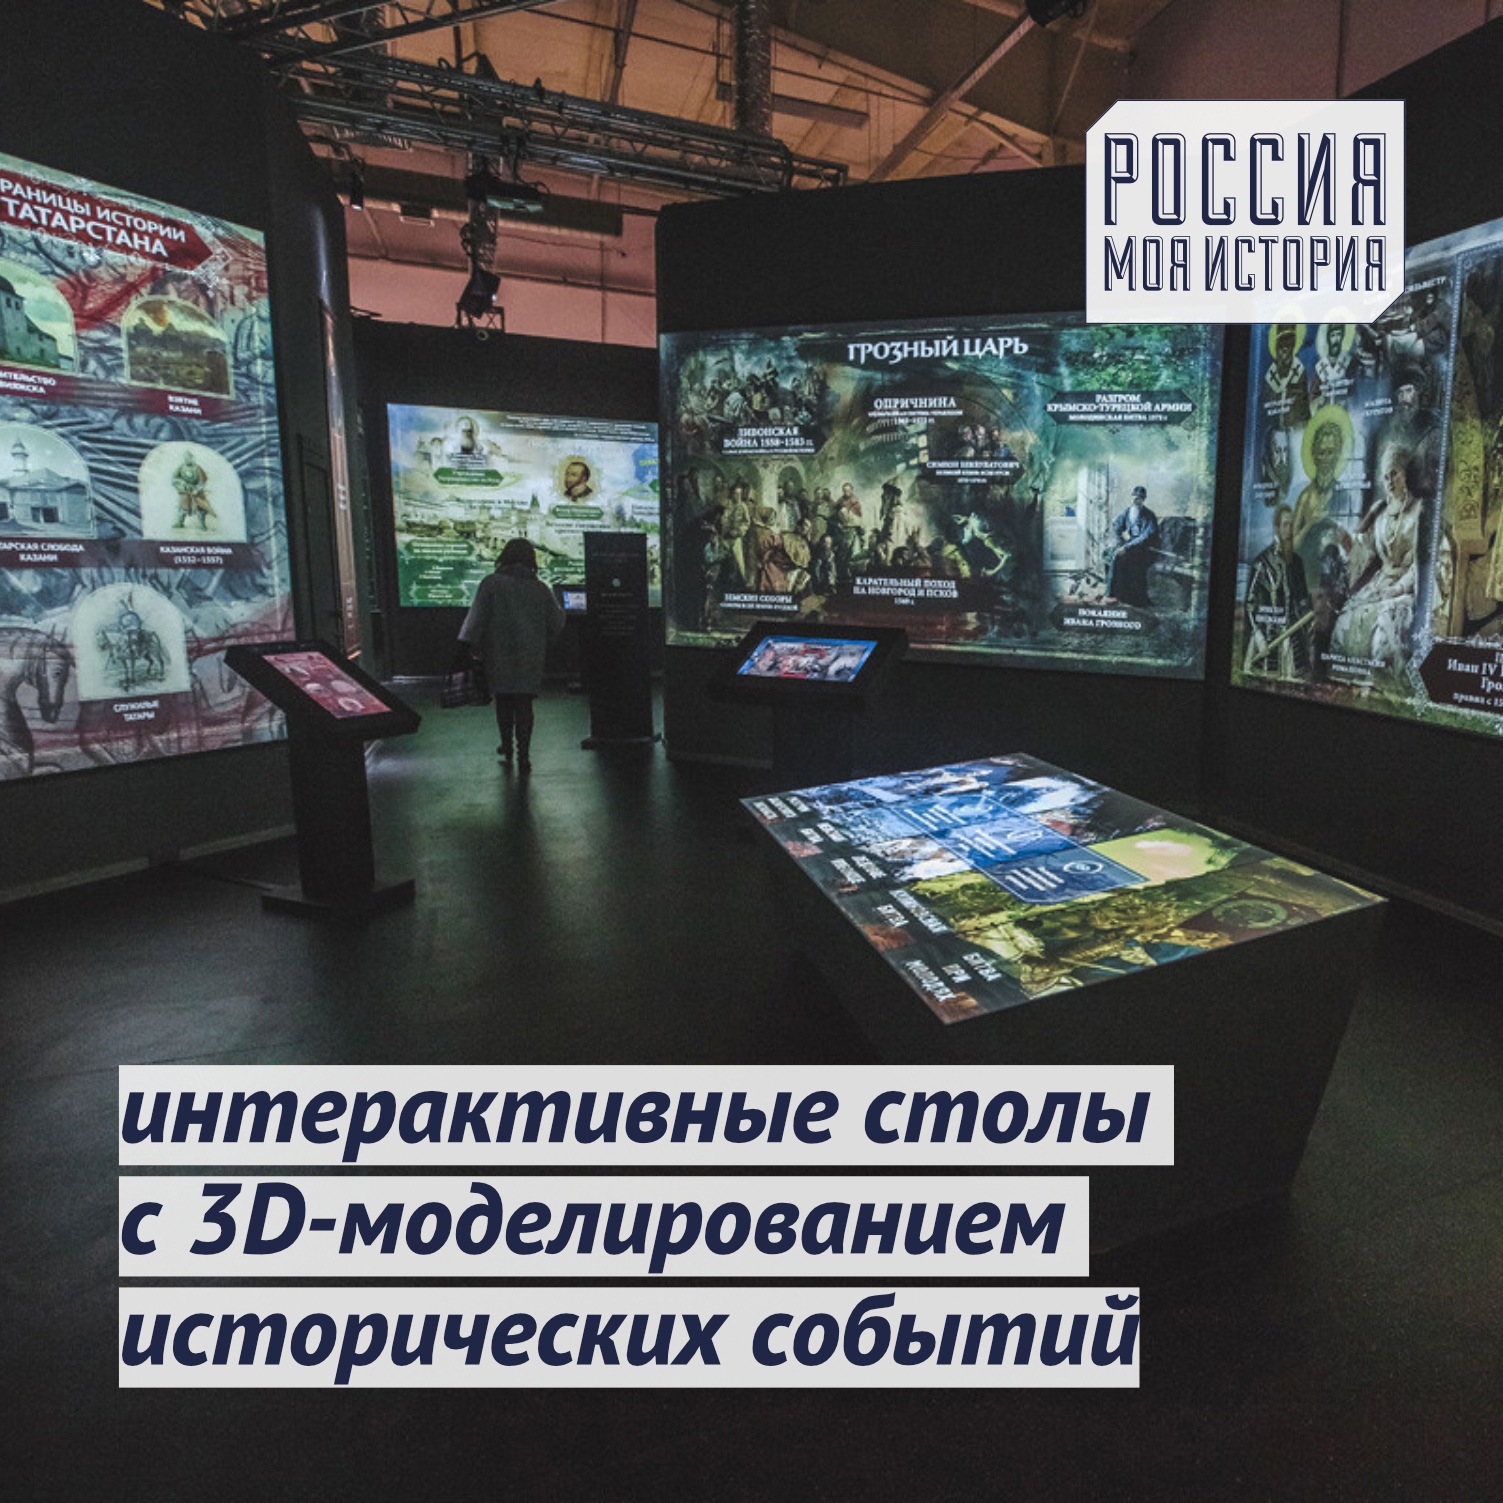 Мультимедийный парк россия моя история тверь фото